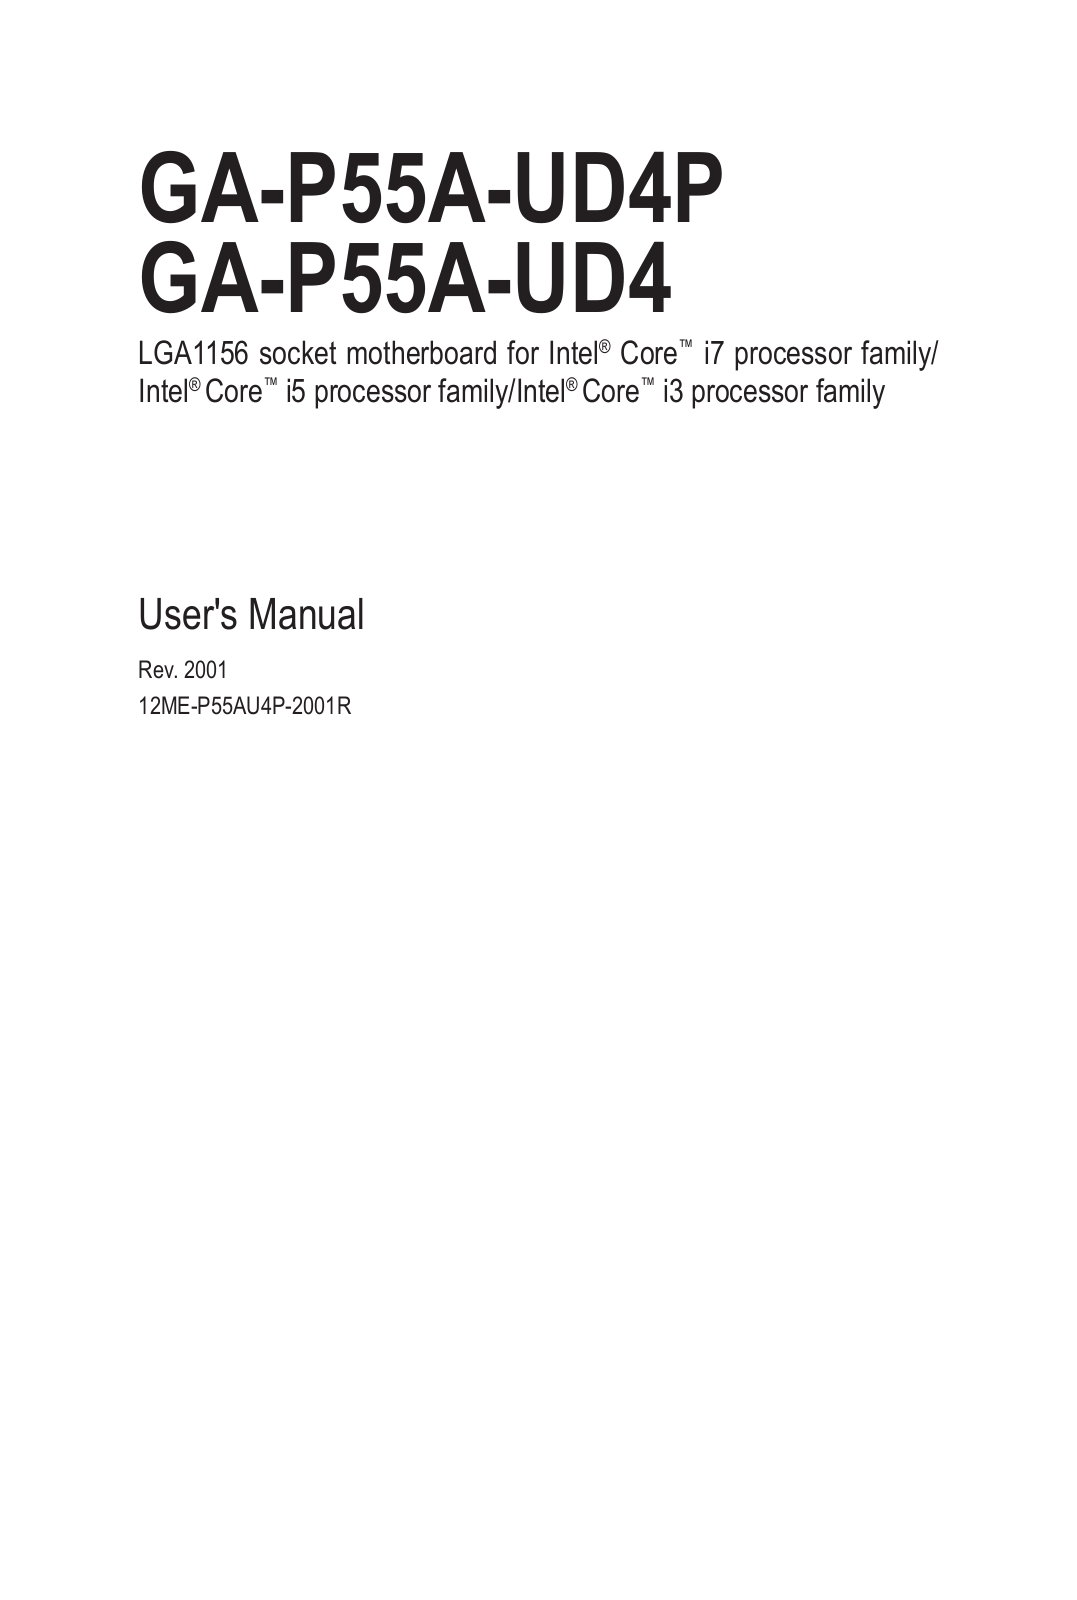 Gigabyte GA-P55A-UD4 (rev. 2.0), GA-P55A-UD4P (rev. 2.0) User Manual